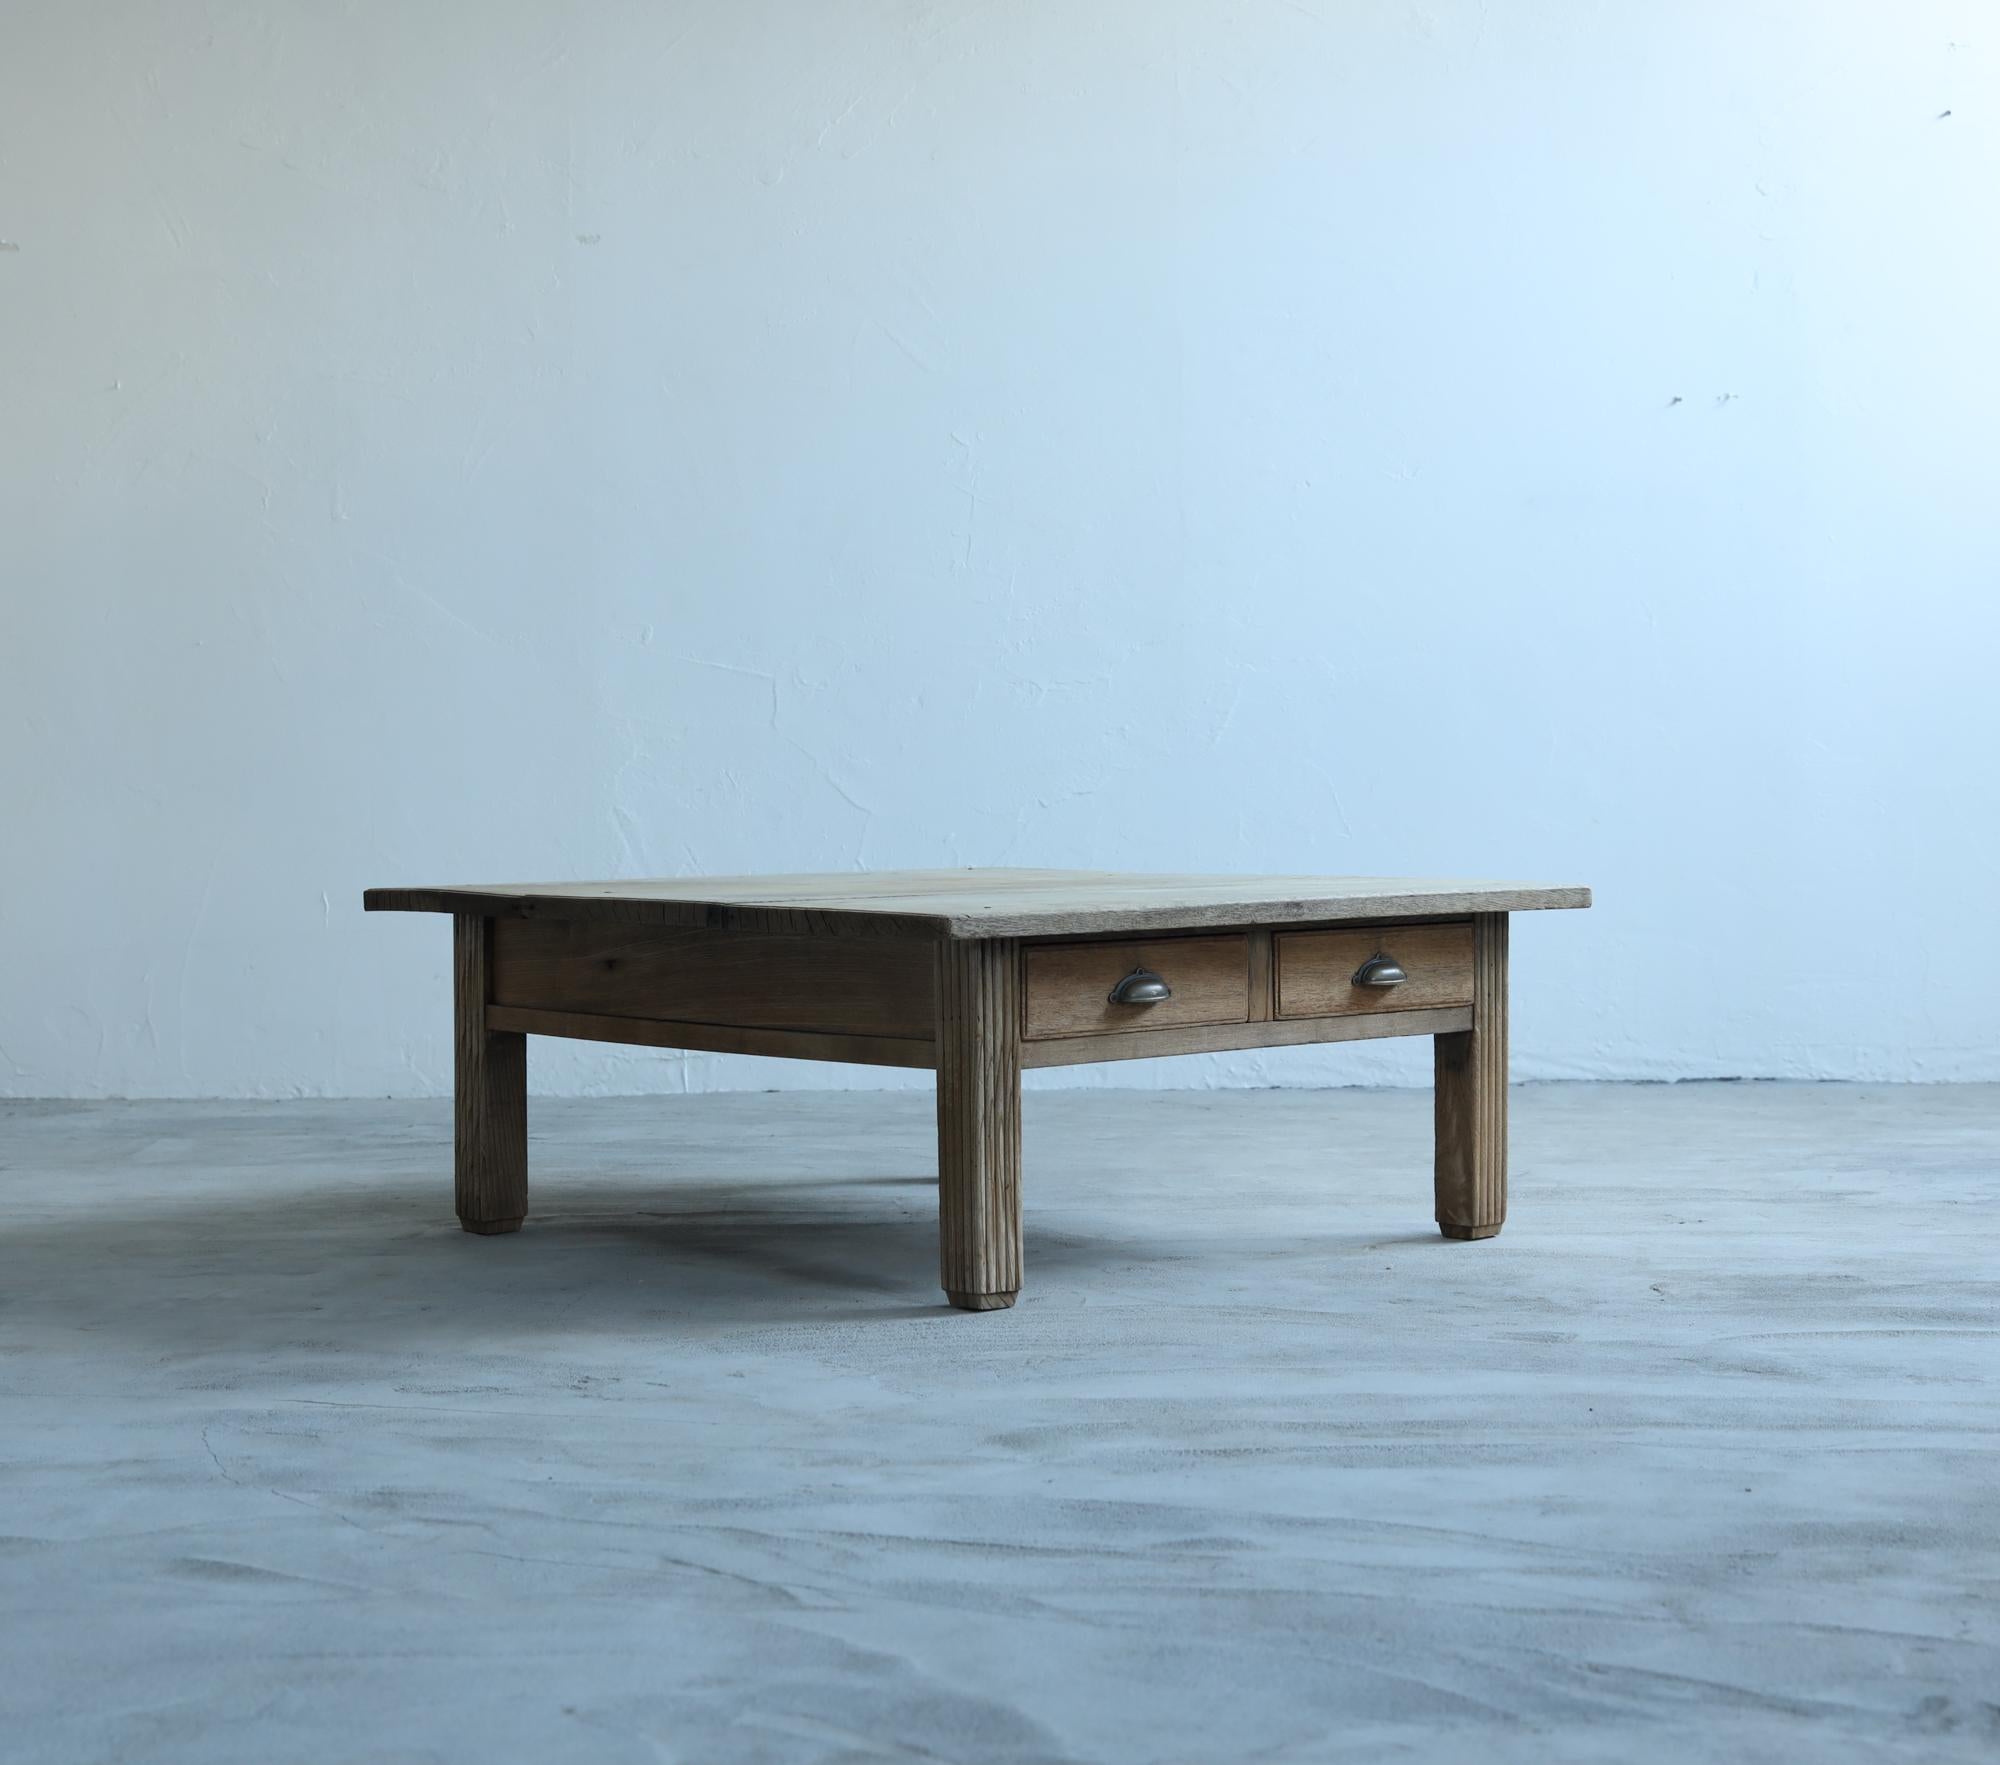 Il s'agit d'une table basse japonaise ancienne produite pendant la période Taisho.

Ce mobilier a été réalisé en appliquant les techniques traditionnelles utilisées dans les sanctuaires japonais.

Le matériau utilisé est du bois de chêne de haute